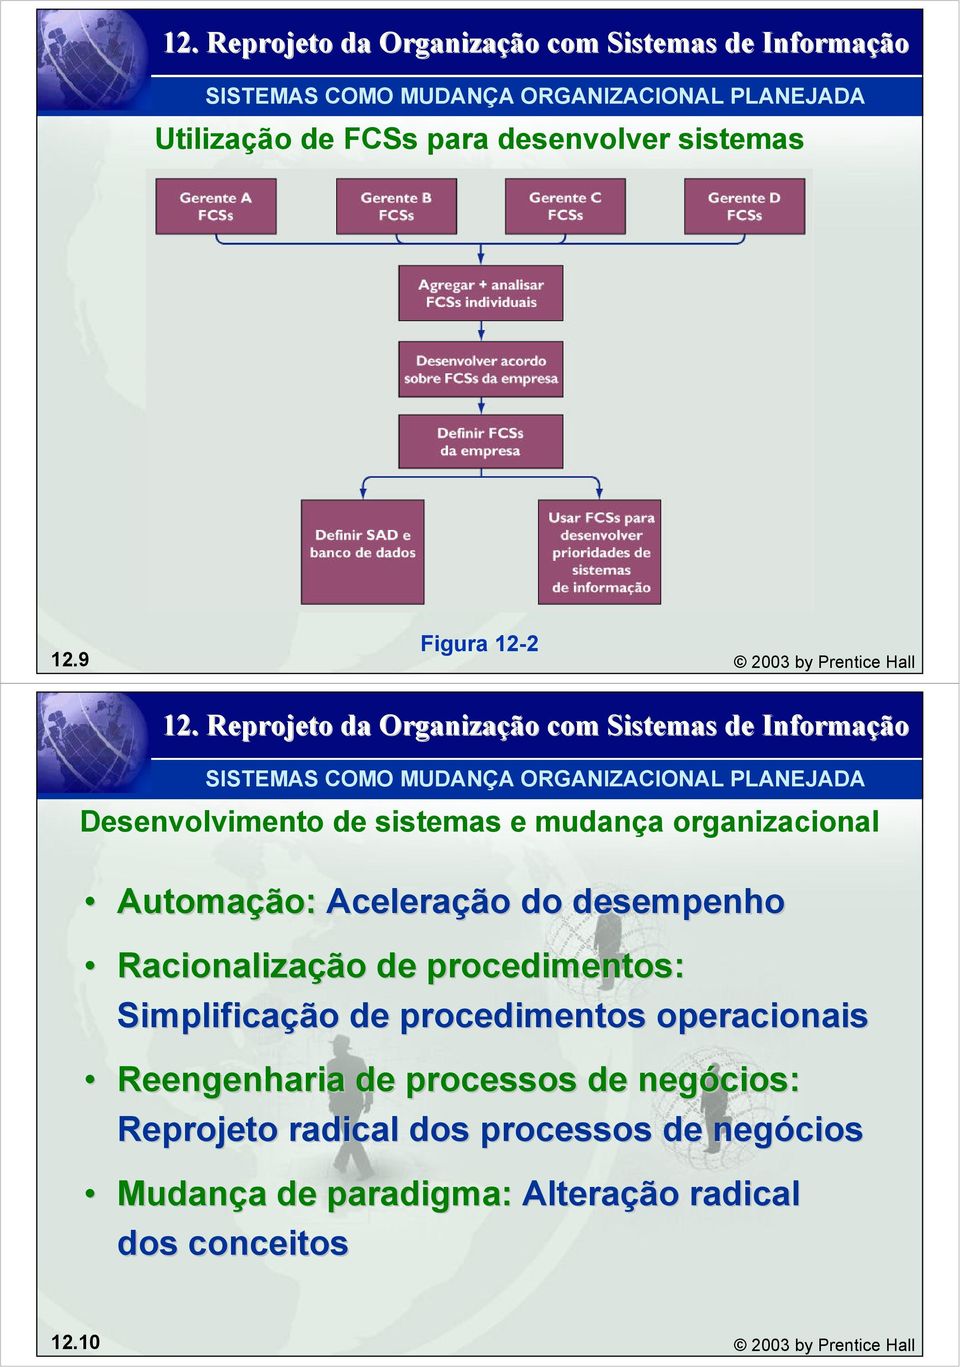 Automação: Aceleração do desempenho Racionalização de procedimentos: Simplificação de procedimentos operacionais Reengenharia